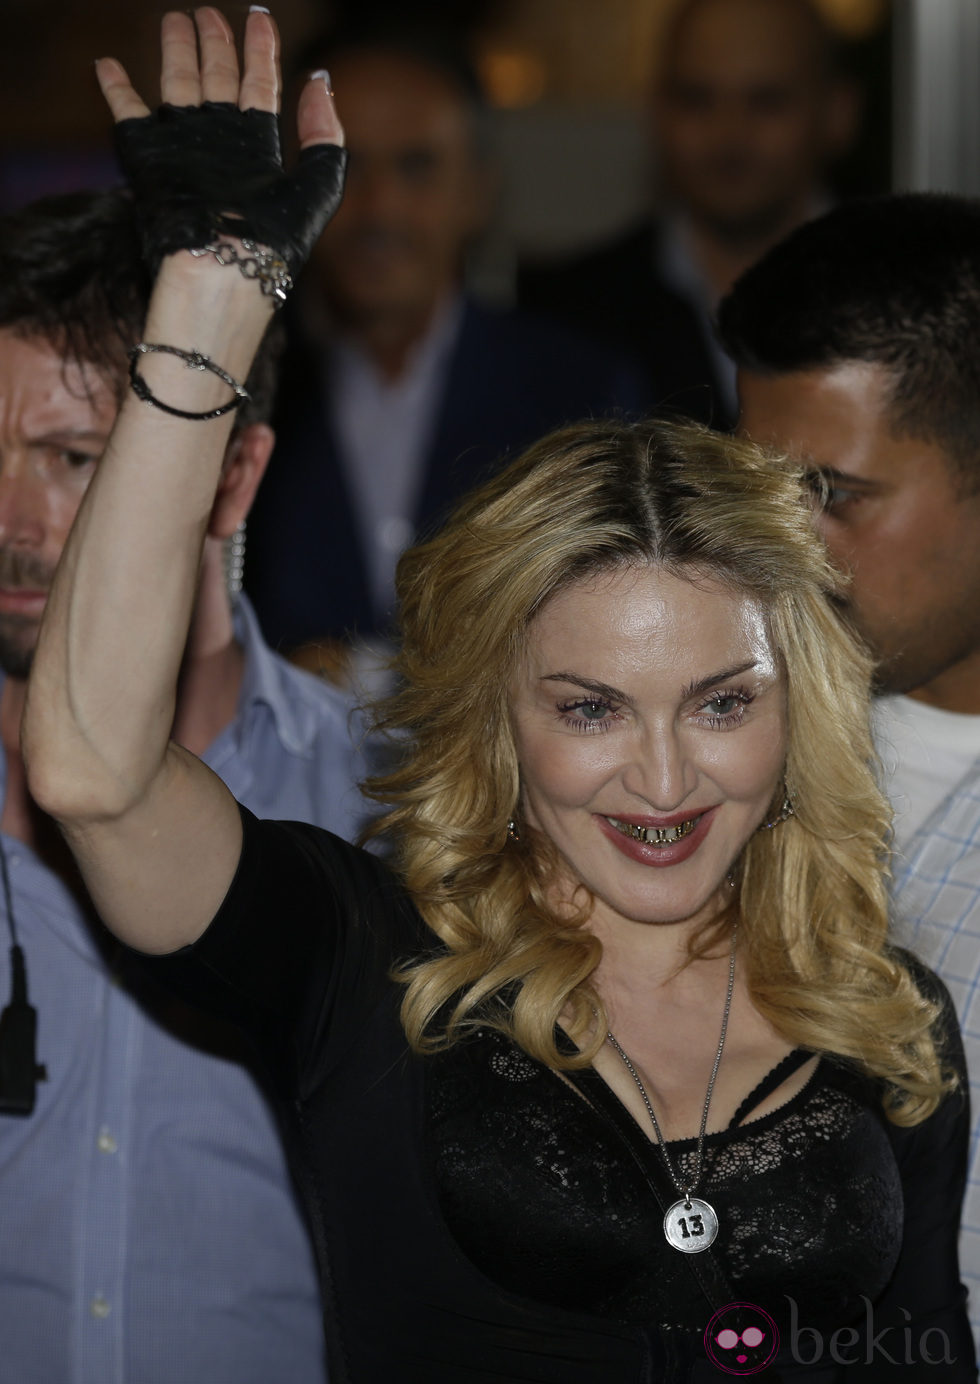 Madonna luciendo sus fundas de oro para los dientes